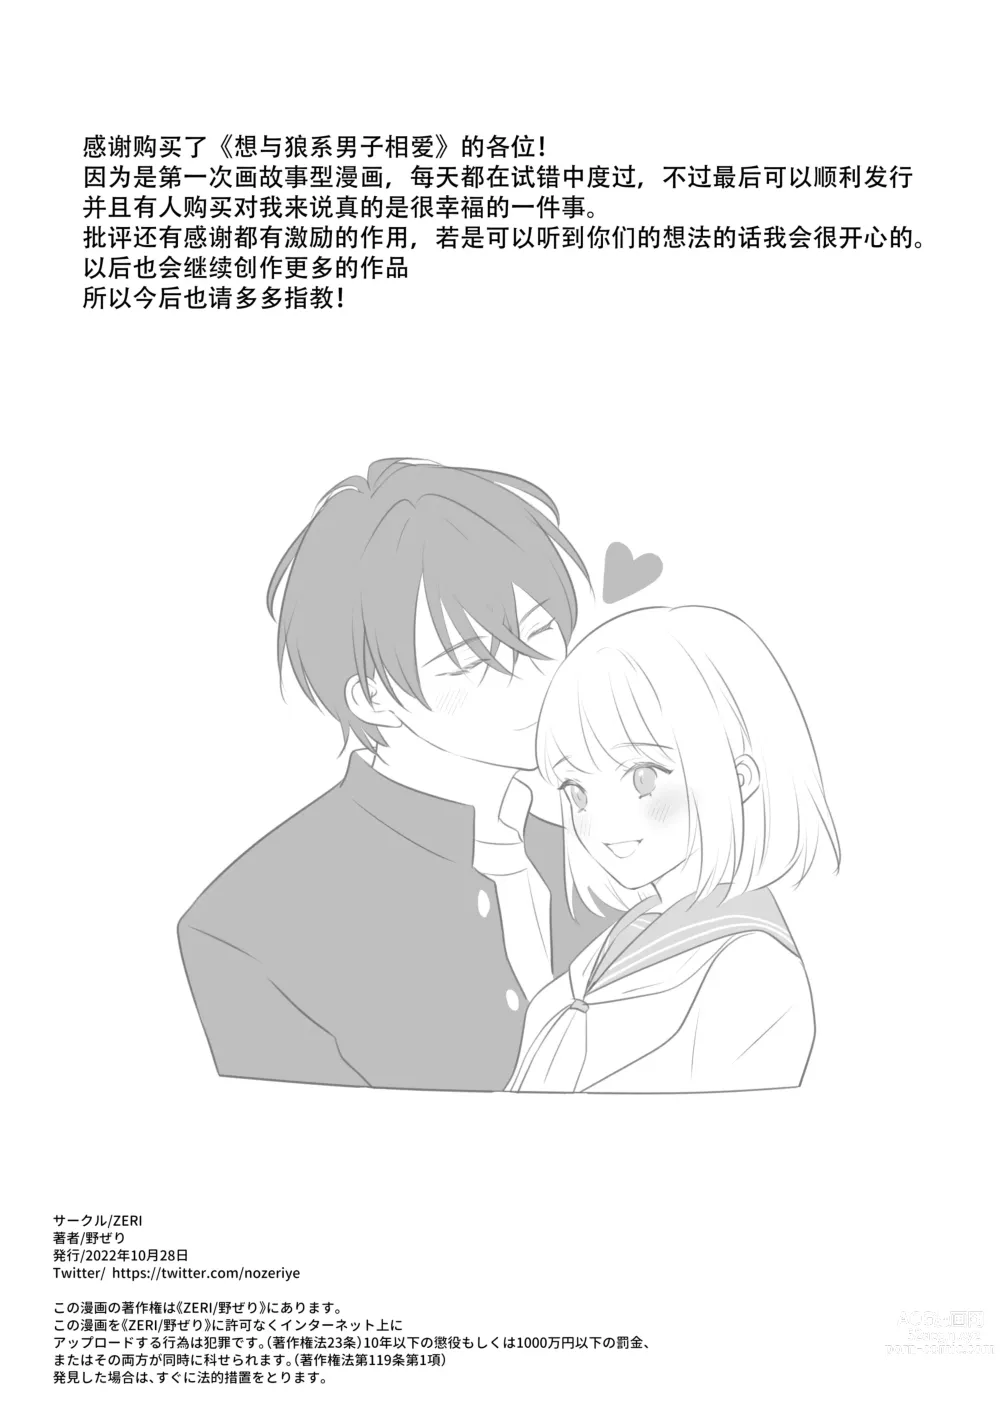 Page 84 of doujinshi 想和狼少年相爱